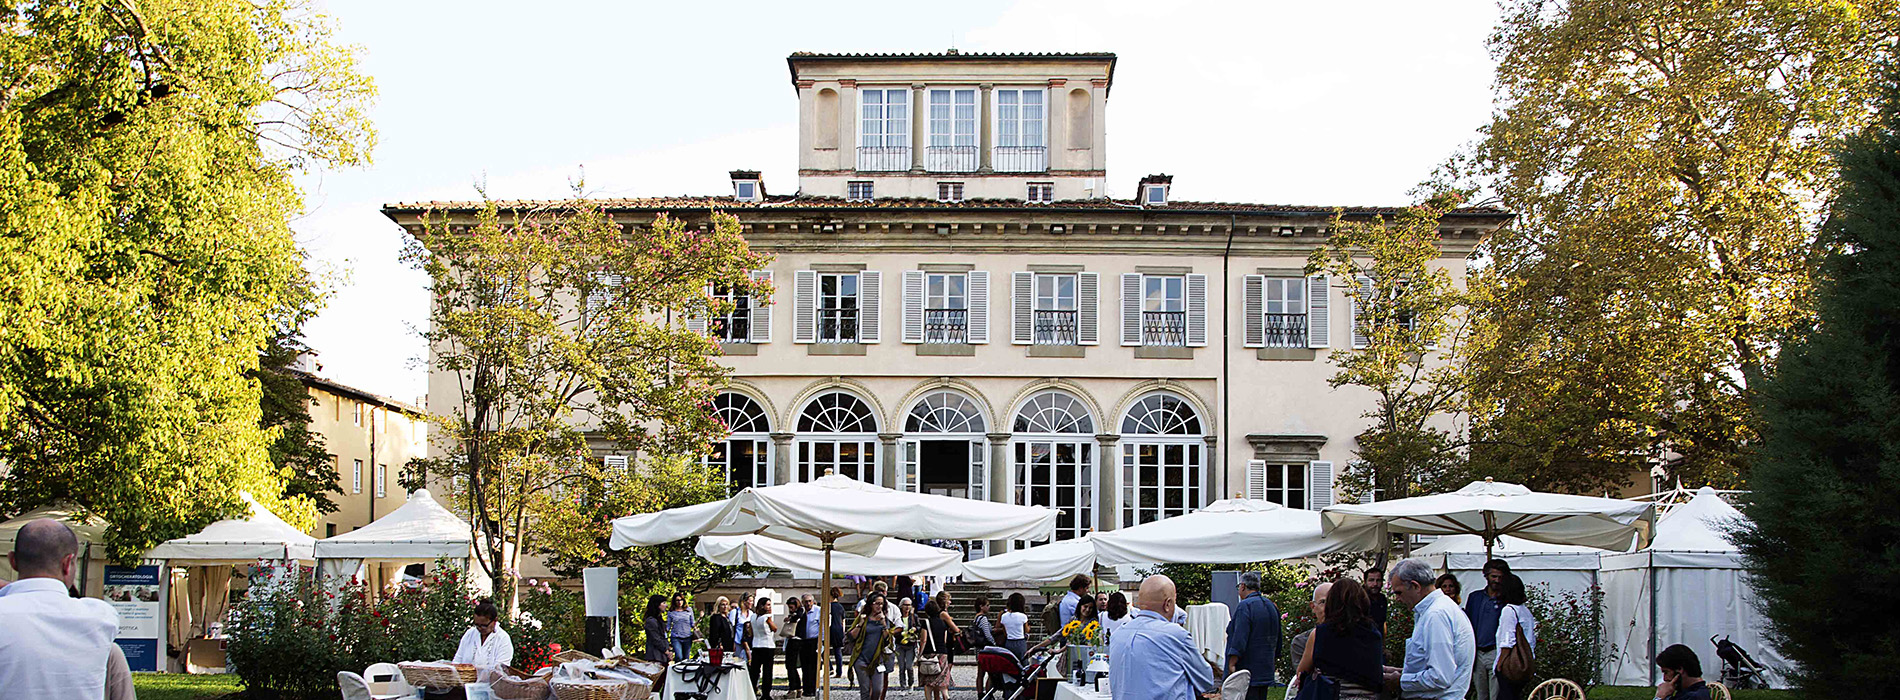 Nel cuore di Lucca ritorna la mostra mercato Fashion in Flair